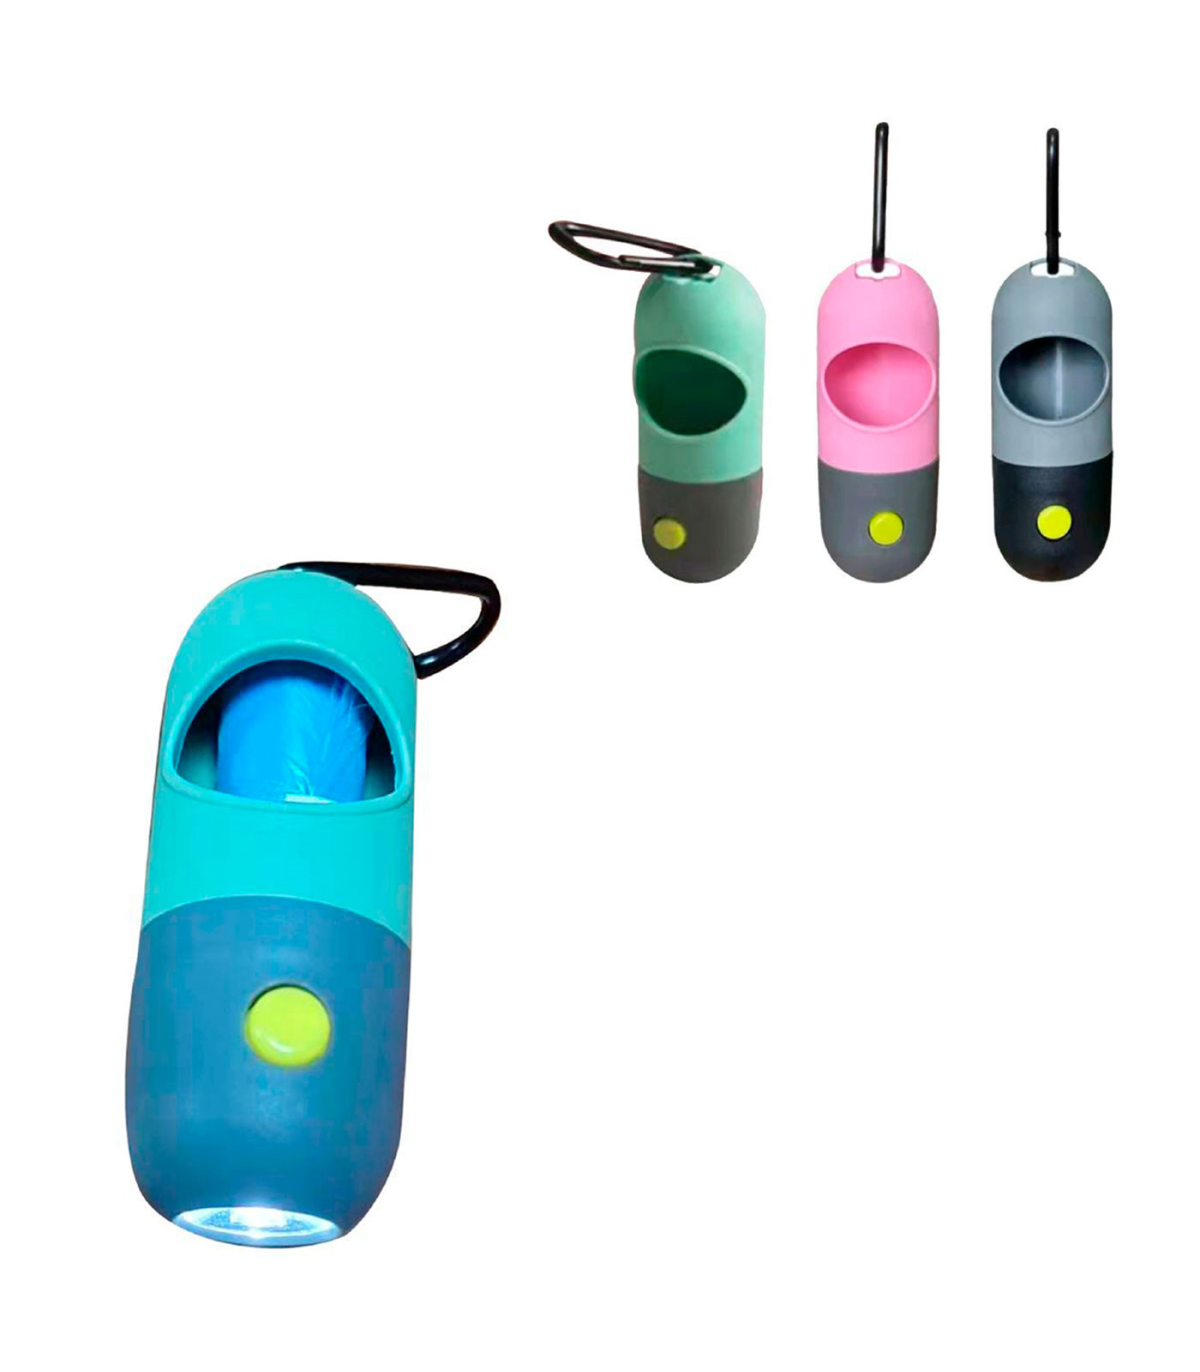 Tradineur - Dispensador de bolsas para excrementos de perro con linterna  LED incorporada, clip de metal para correa y un rollo d